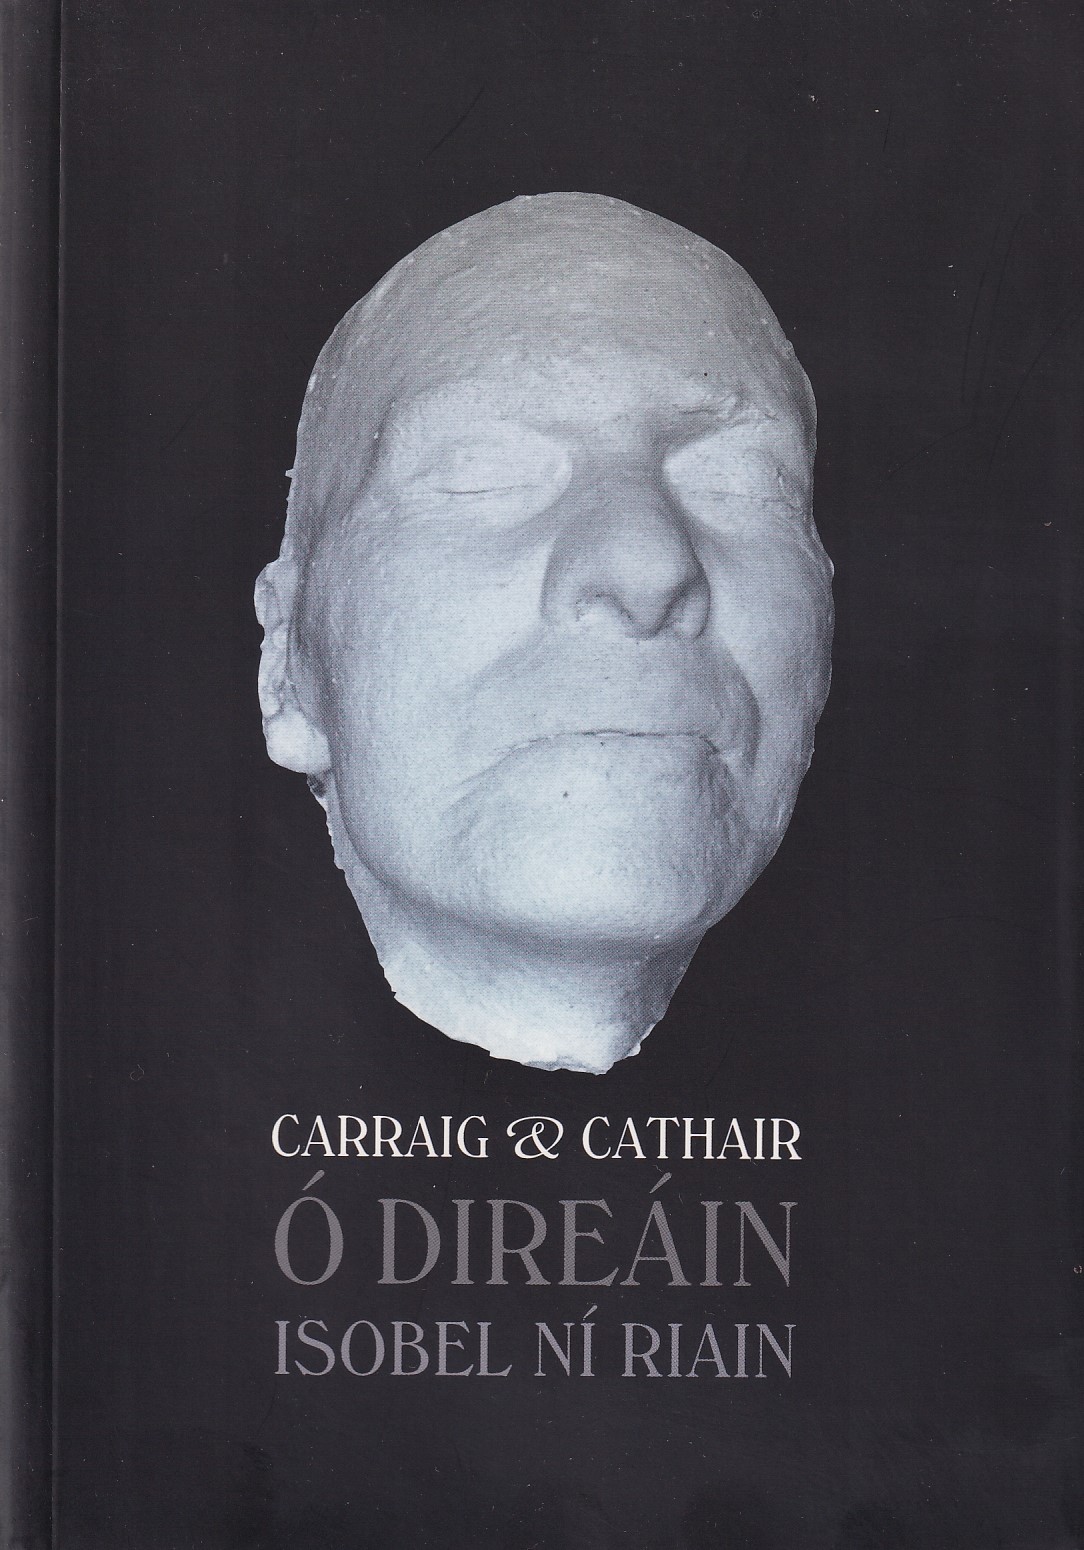 Carraig & Cathair: Ó Direáin by Isobel Ní Riain